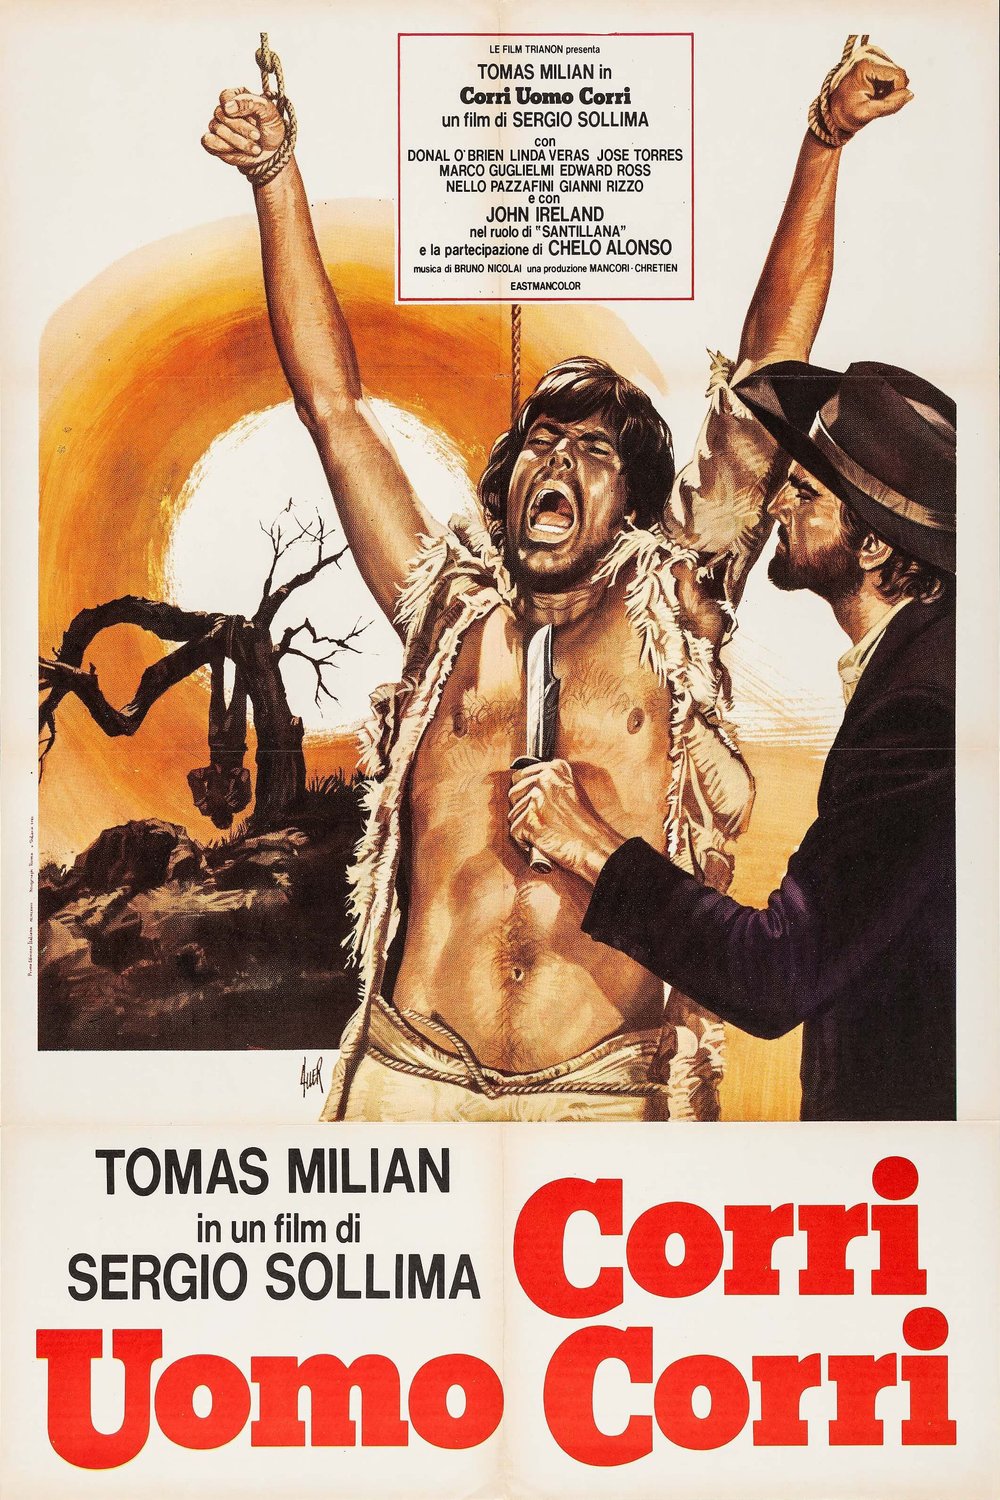 Spanish poster of the movie Corri uomo corri